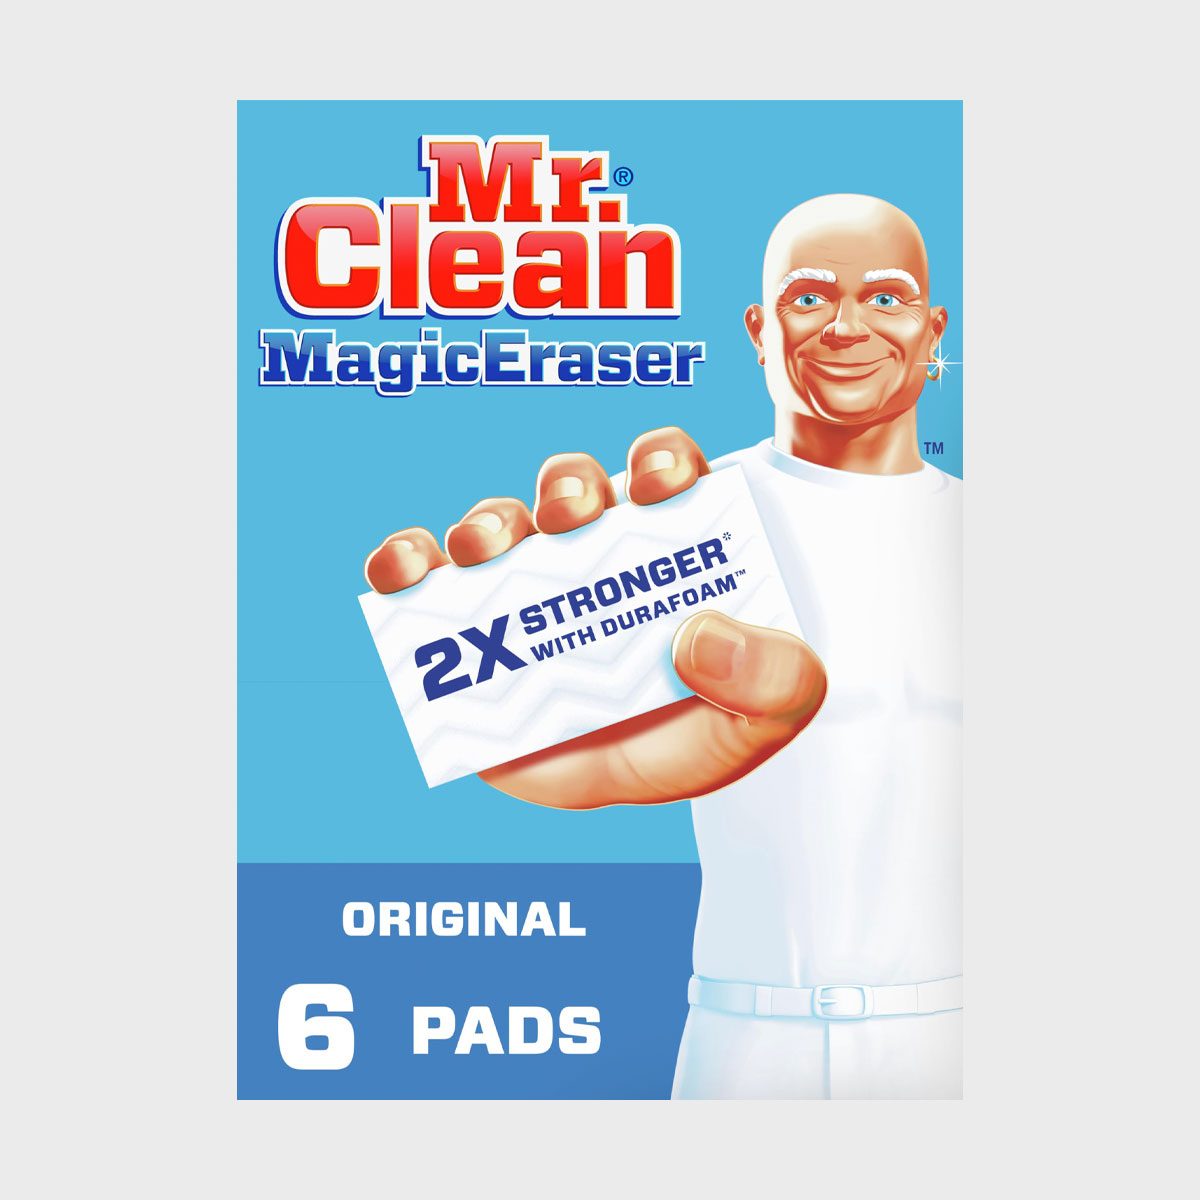 Mr. Clean Magic Eraser Original Cleaning Pads With Durafoam